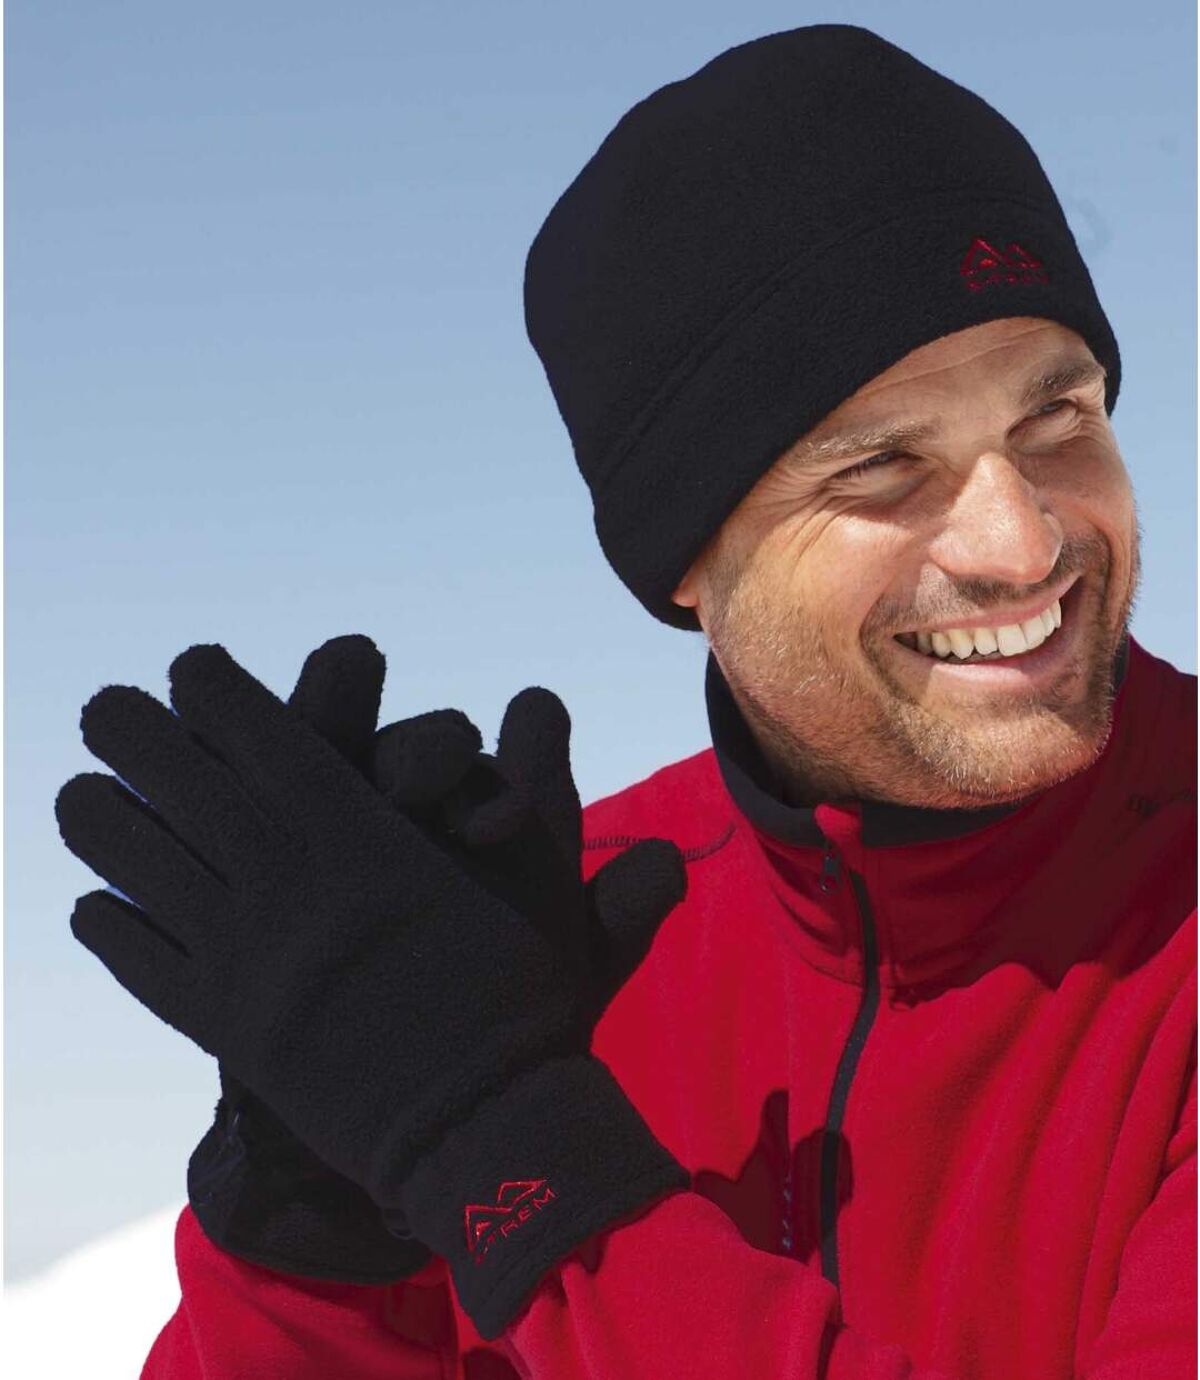 Men’s Black Fleece Hat & Gloves Set Atlas For Men